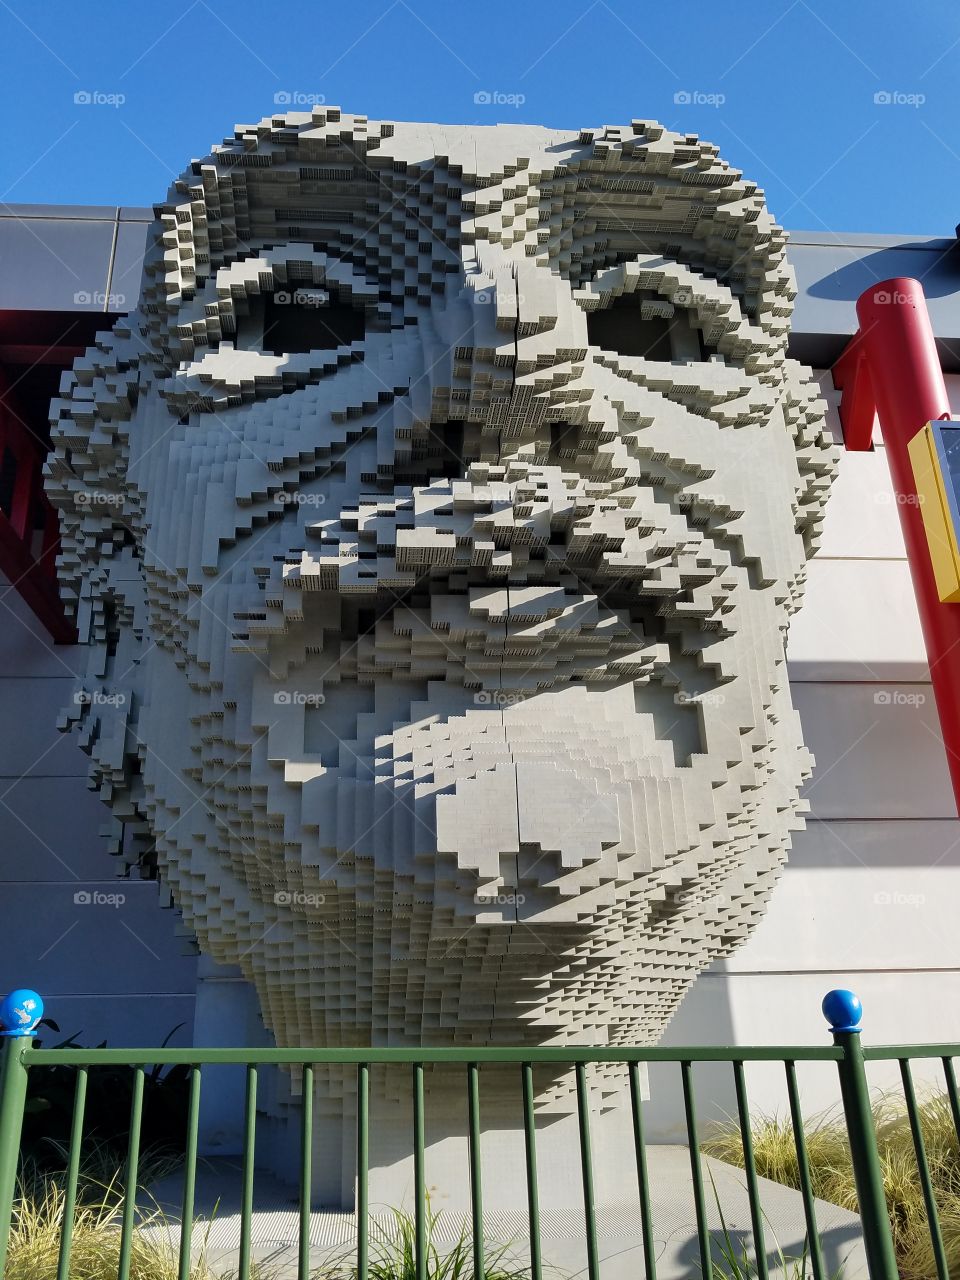 Lego Albert Einstein Sculpture